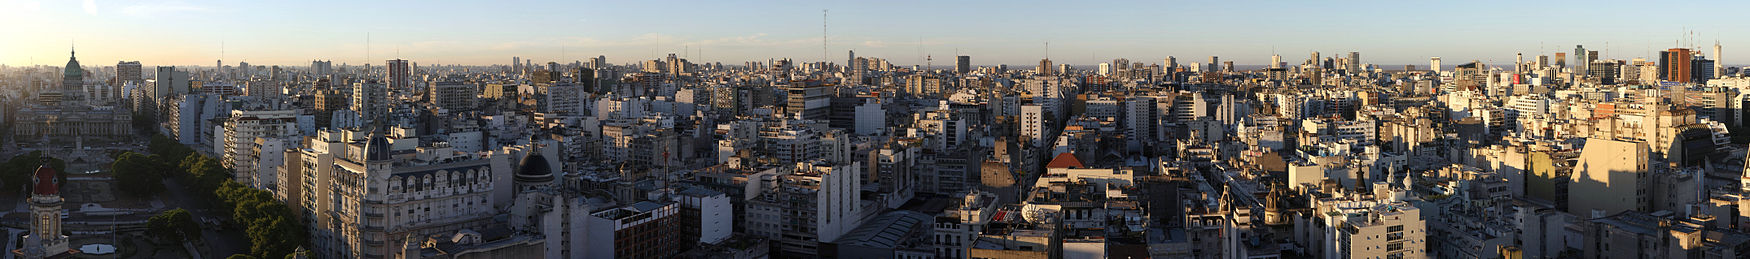 Панорама центра города.